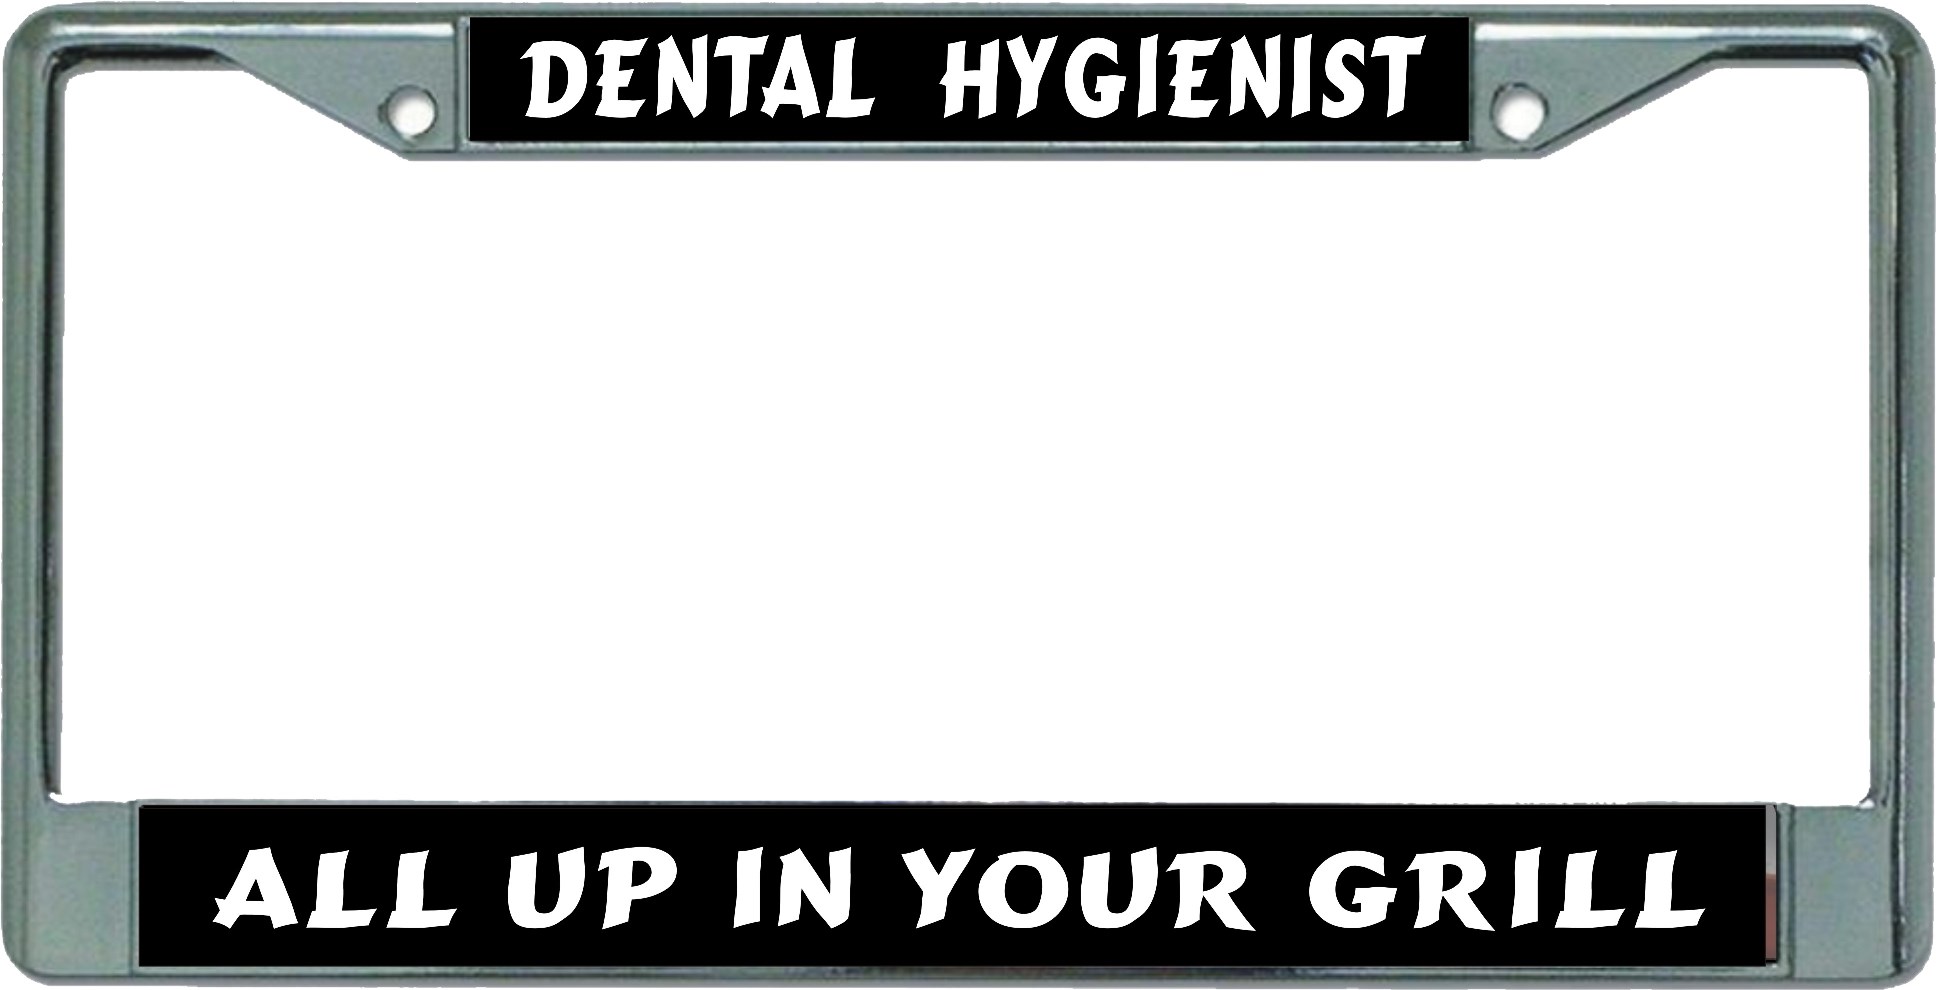 Dental Hygienist Chrome License Plate FRAME